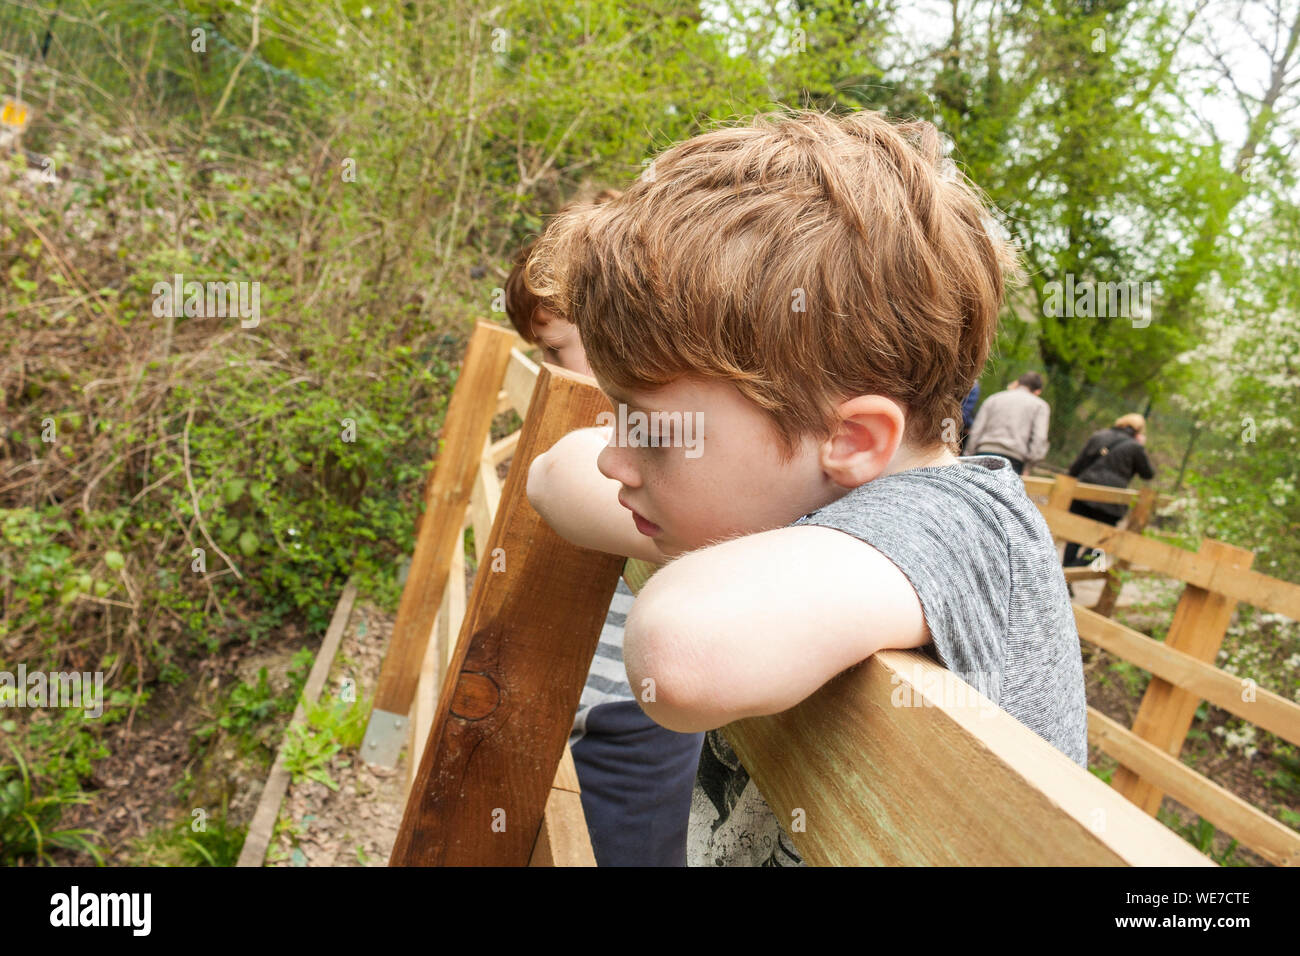 Un joven mirando a través de una pasarela Foto de stock